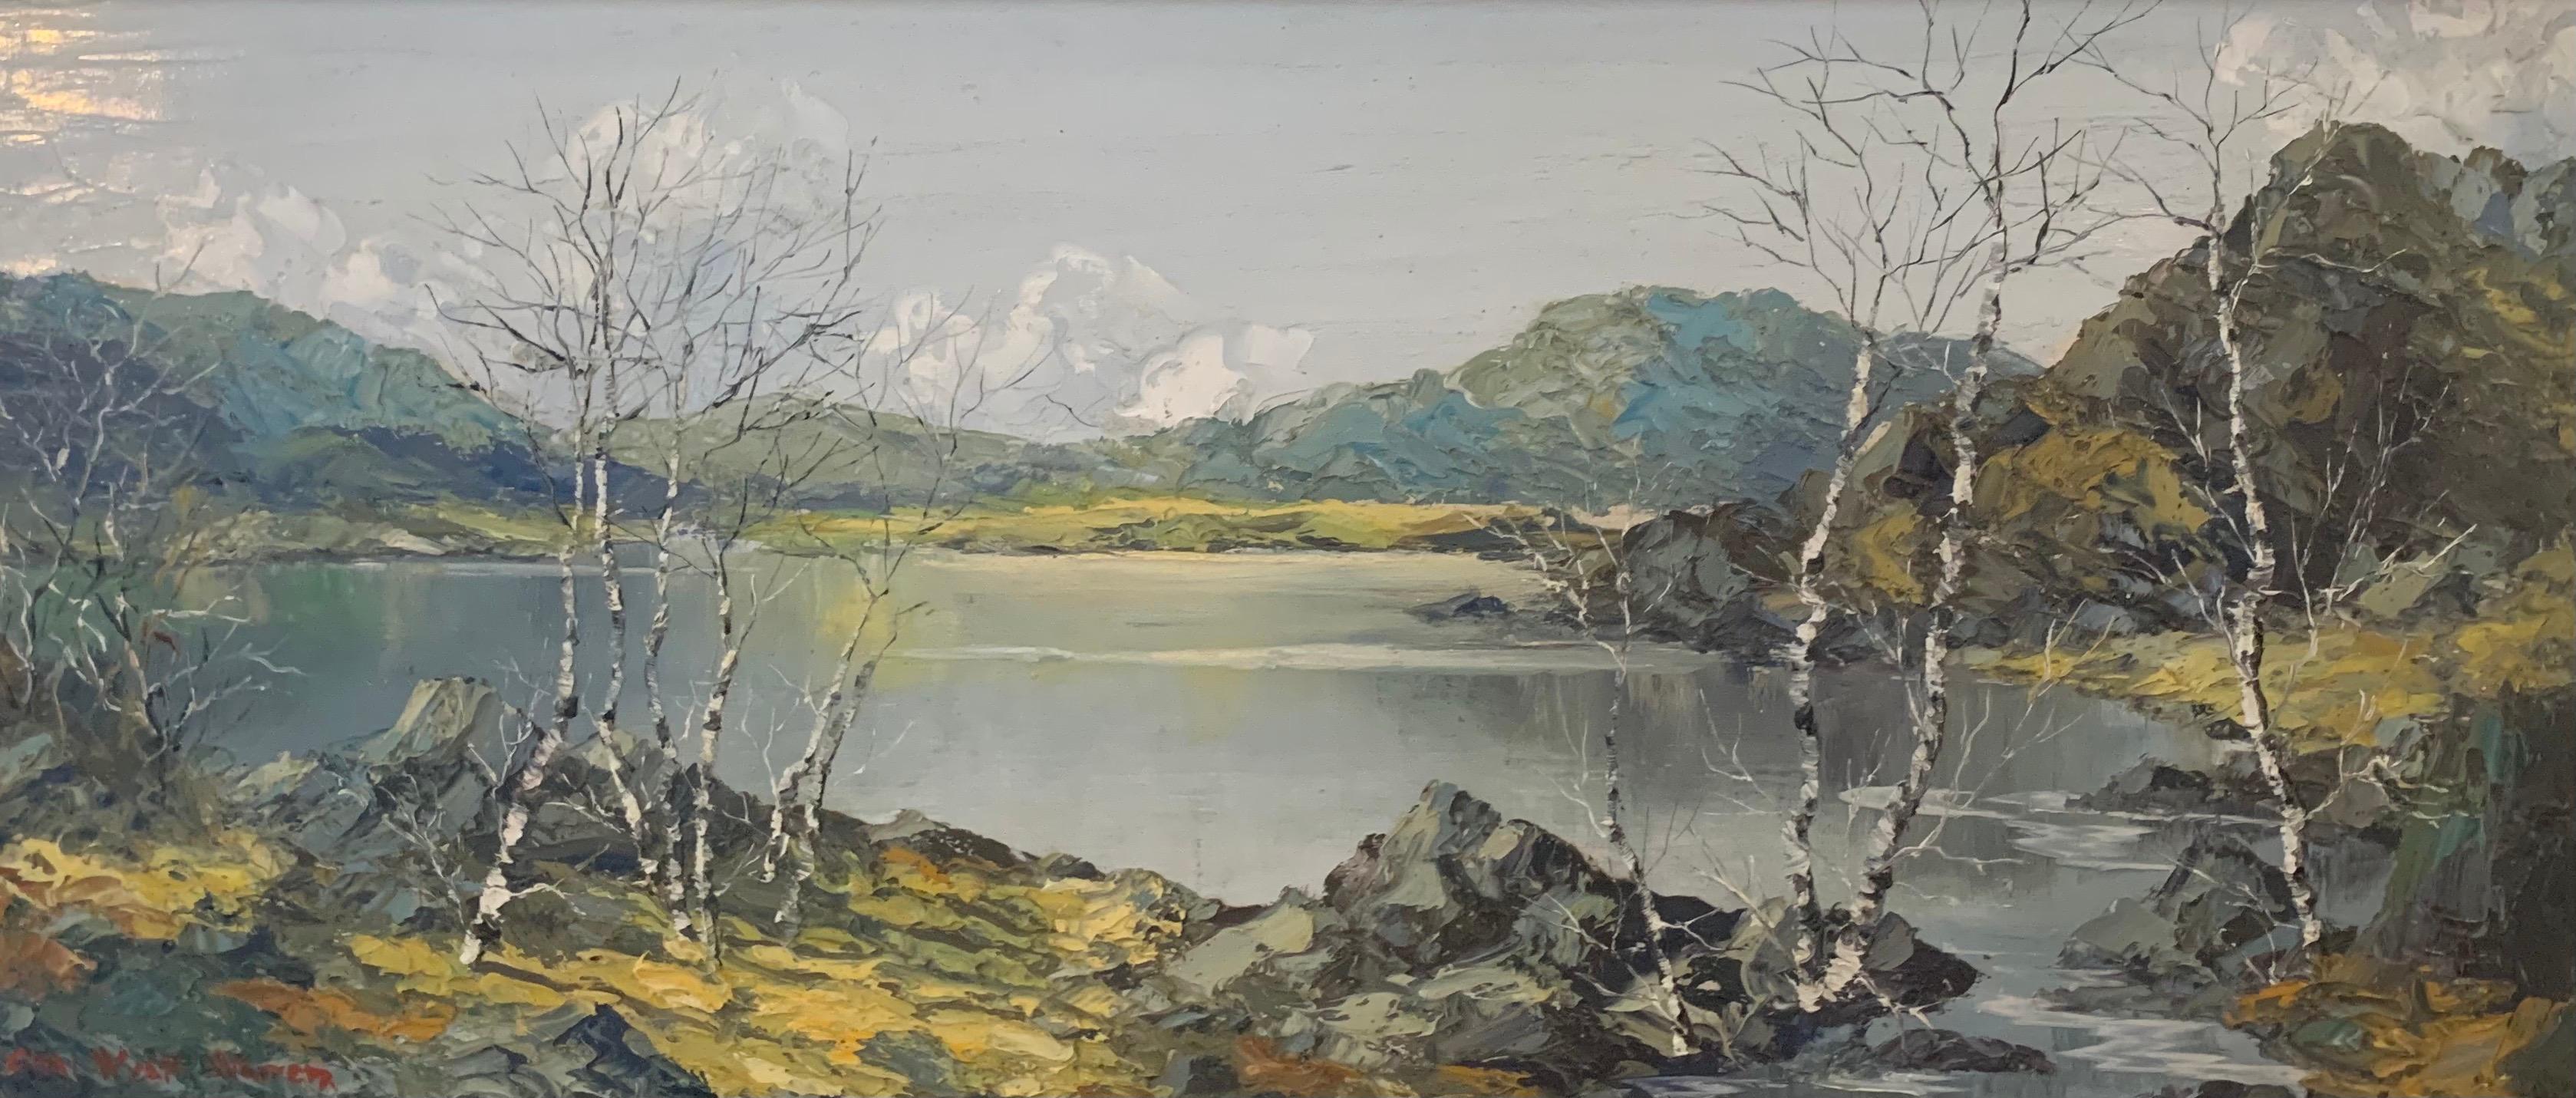 Peinture à l'huile représentant les montagnes et les lacs de Snowdon au Pays de Galles par l'artiste britannique moderne Charles Wyatt Warren (1908-1983)

L'œuvre d'art mesure 21.5 x 9.25 pouces 
Le cadre mesure 28,5 x 17 pouces

Charles Wyatt